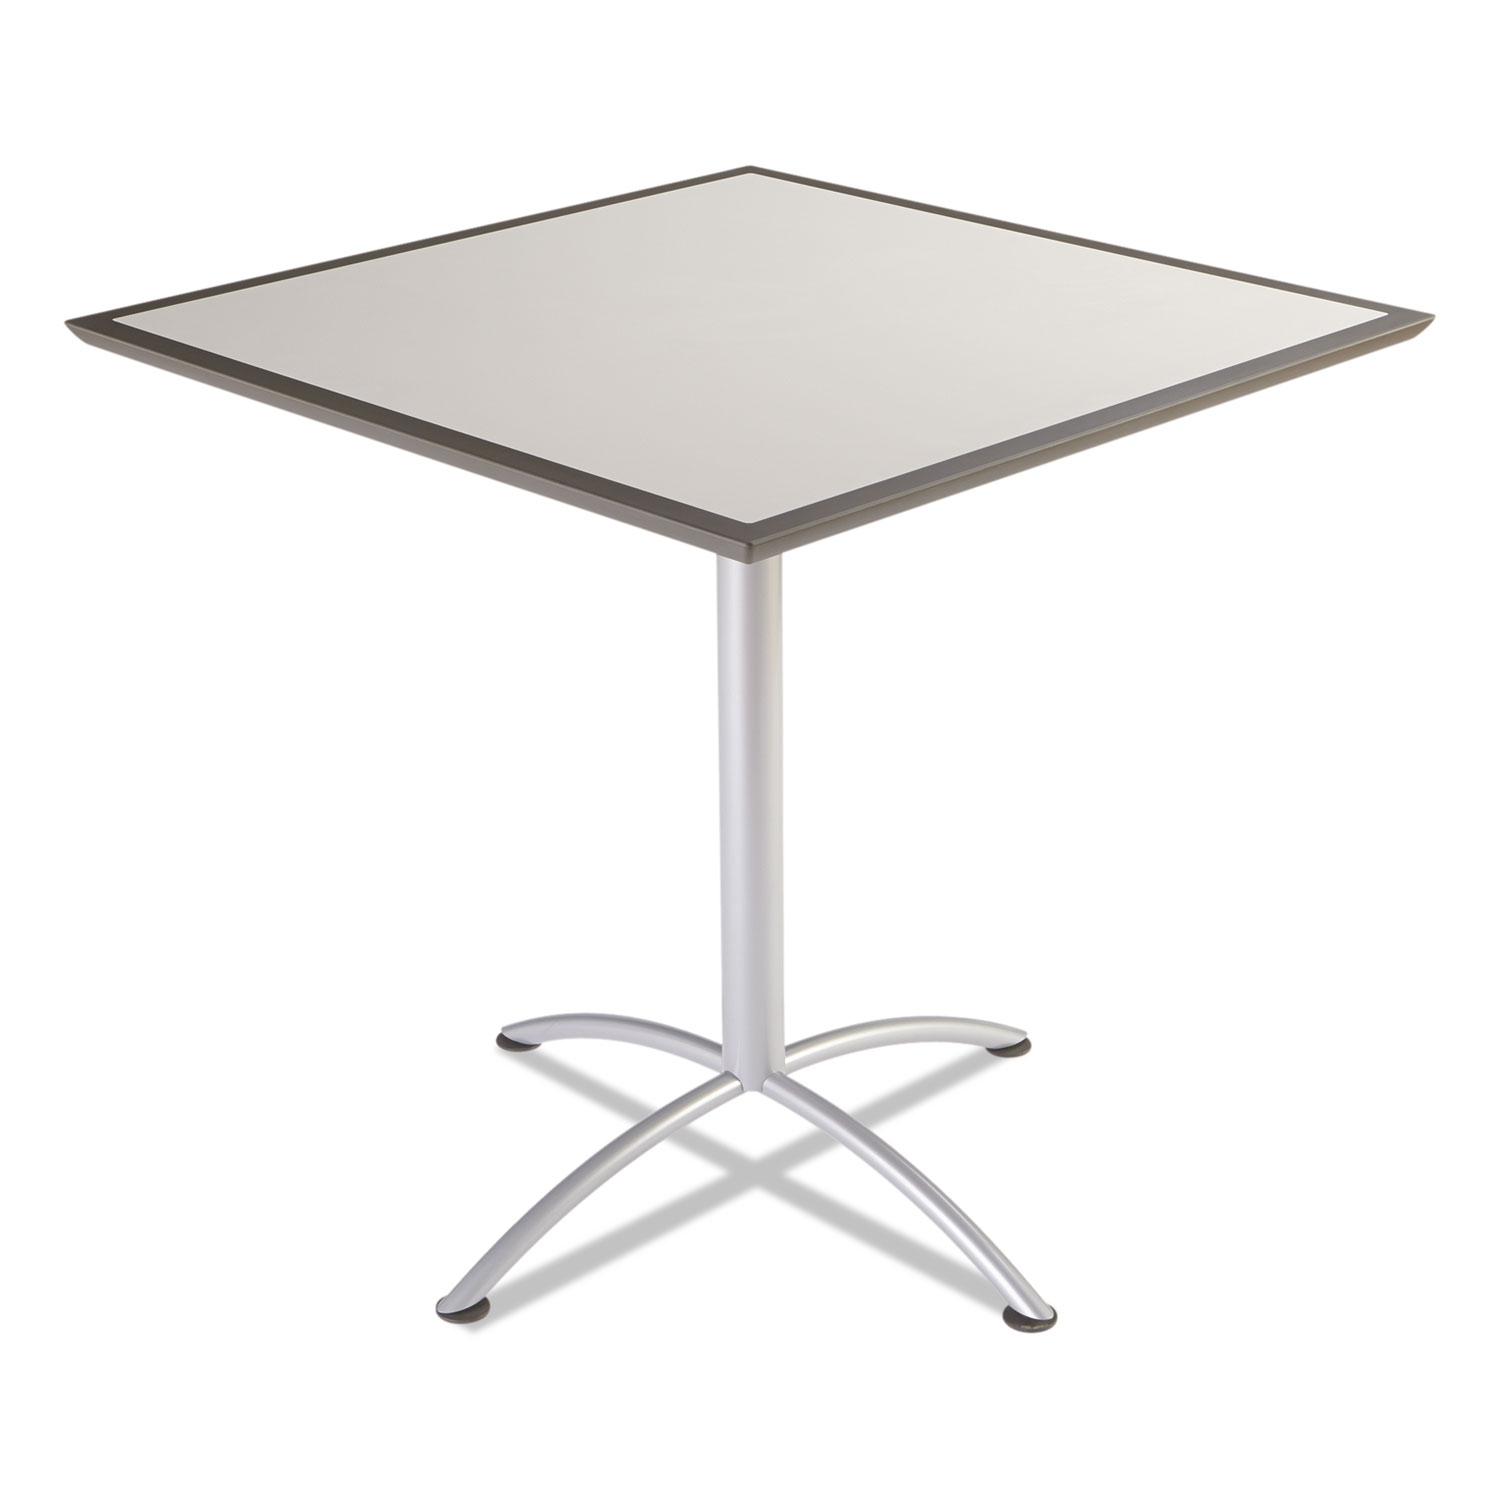 iLand Table, Dura Edge, Square Bistro Style, 42w x 42d x 42h, Gray/Silver